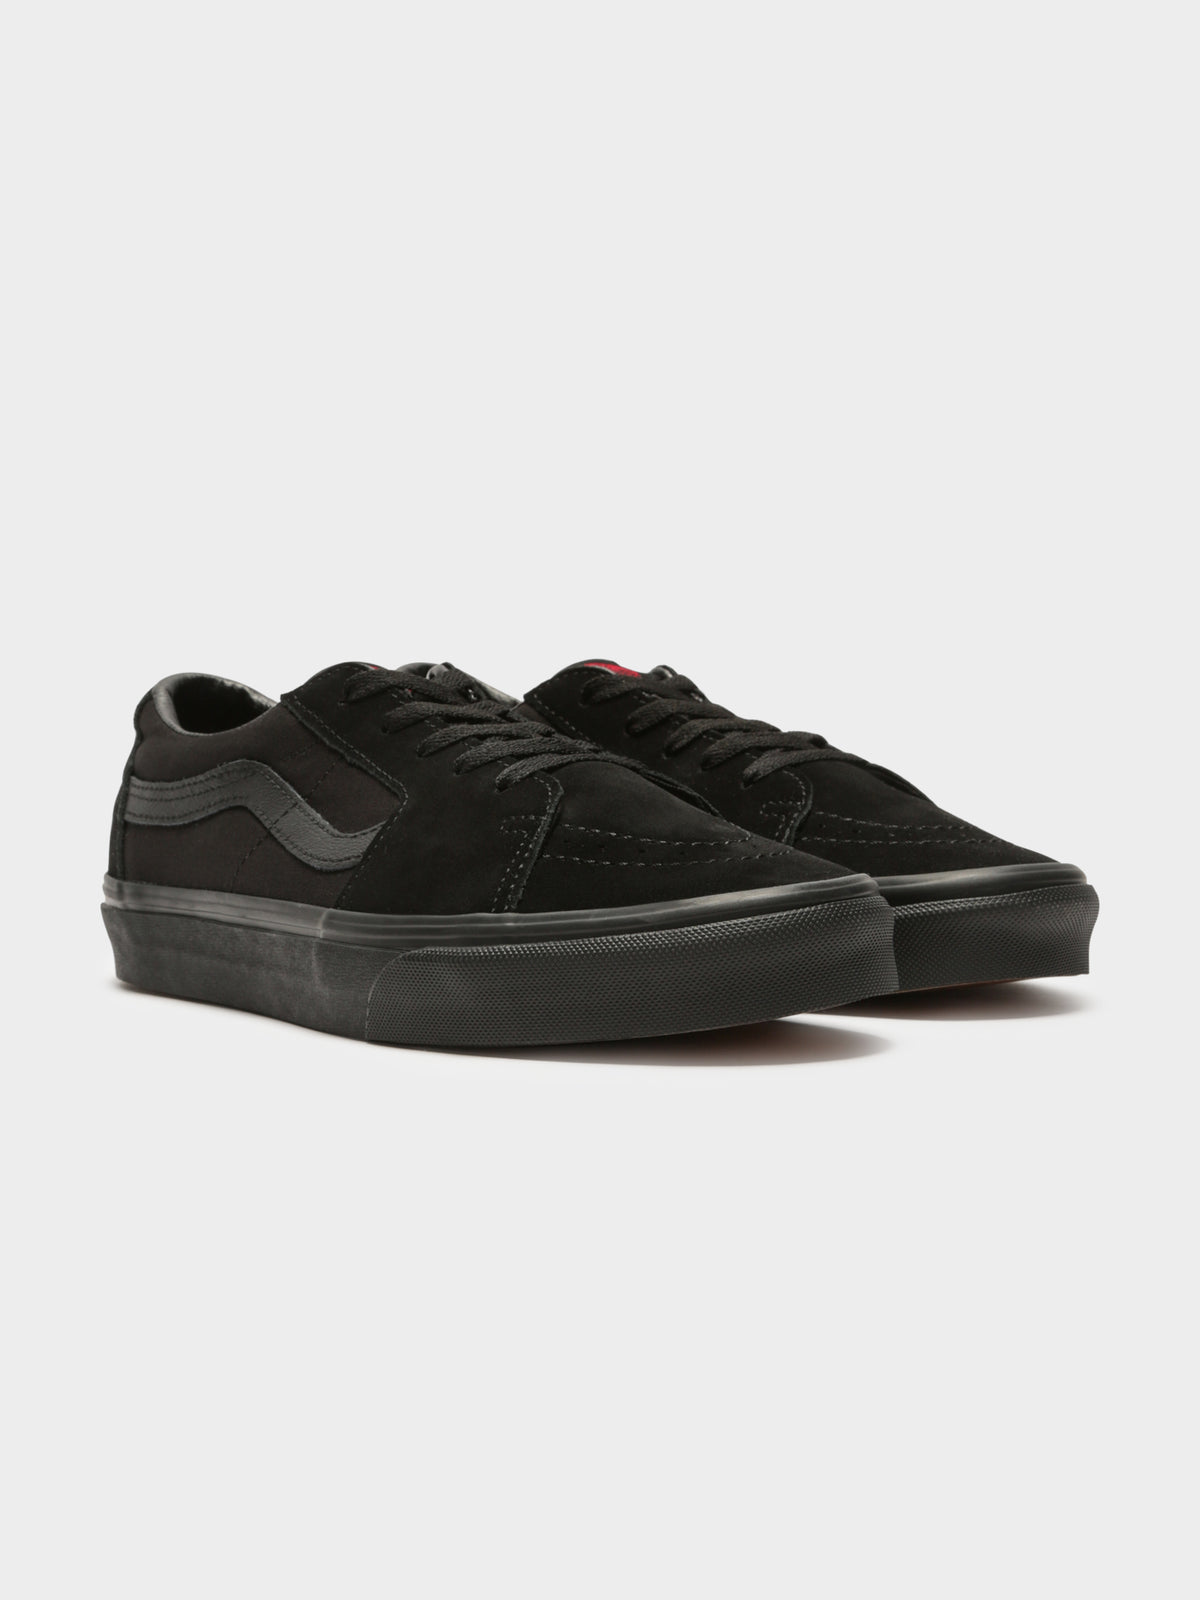 Unisex Sk8 Low Top Sneakers in Black